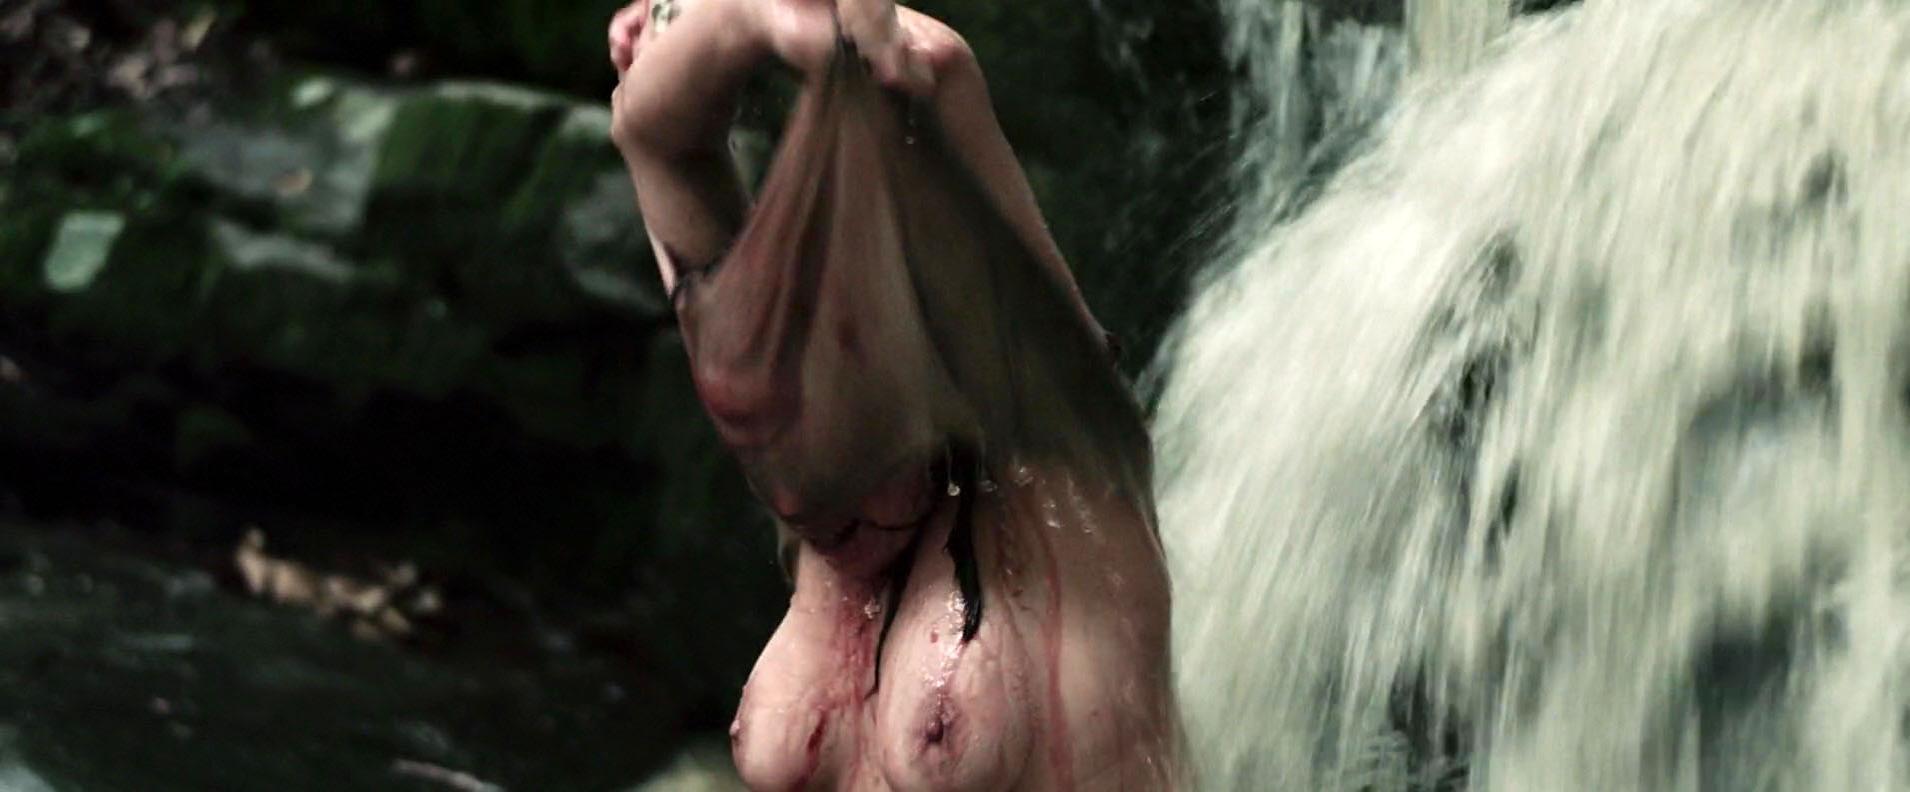 Sex Porn Amanda Murphy - Nude video celebs Â» Actress Â» Amanda Murphy